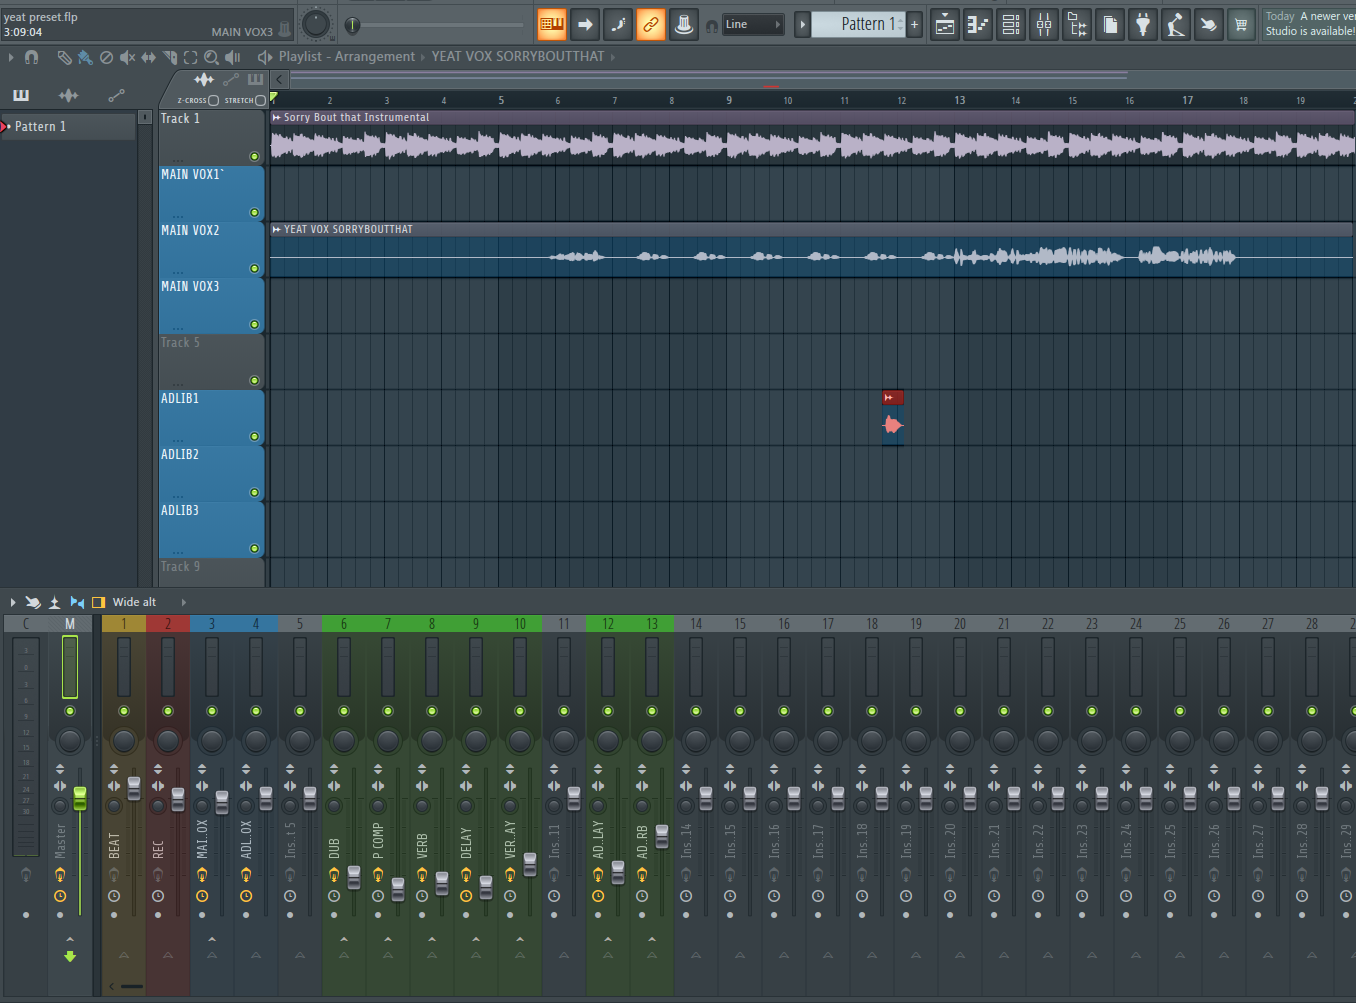 fl studio vocal mixing presets free download